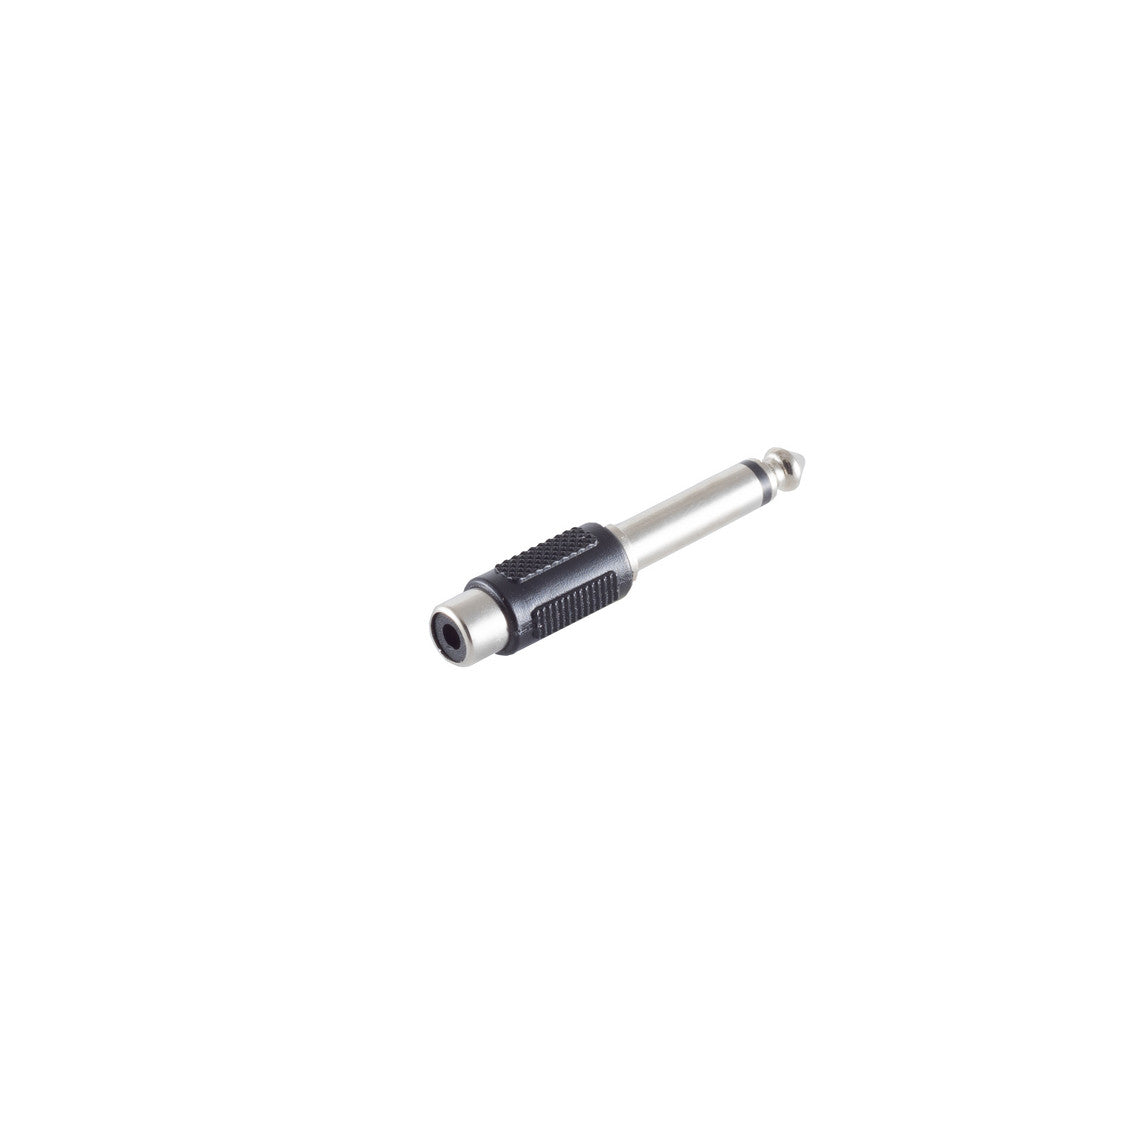 Adapter, Klinkenstecker Mono 6,3mm/Cinchkupplung